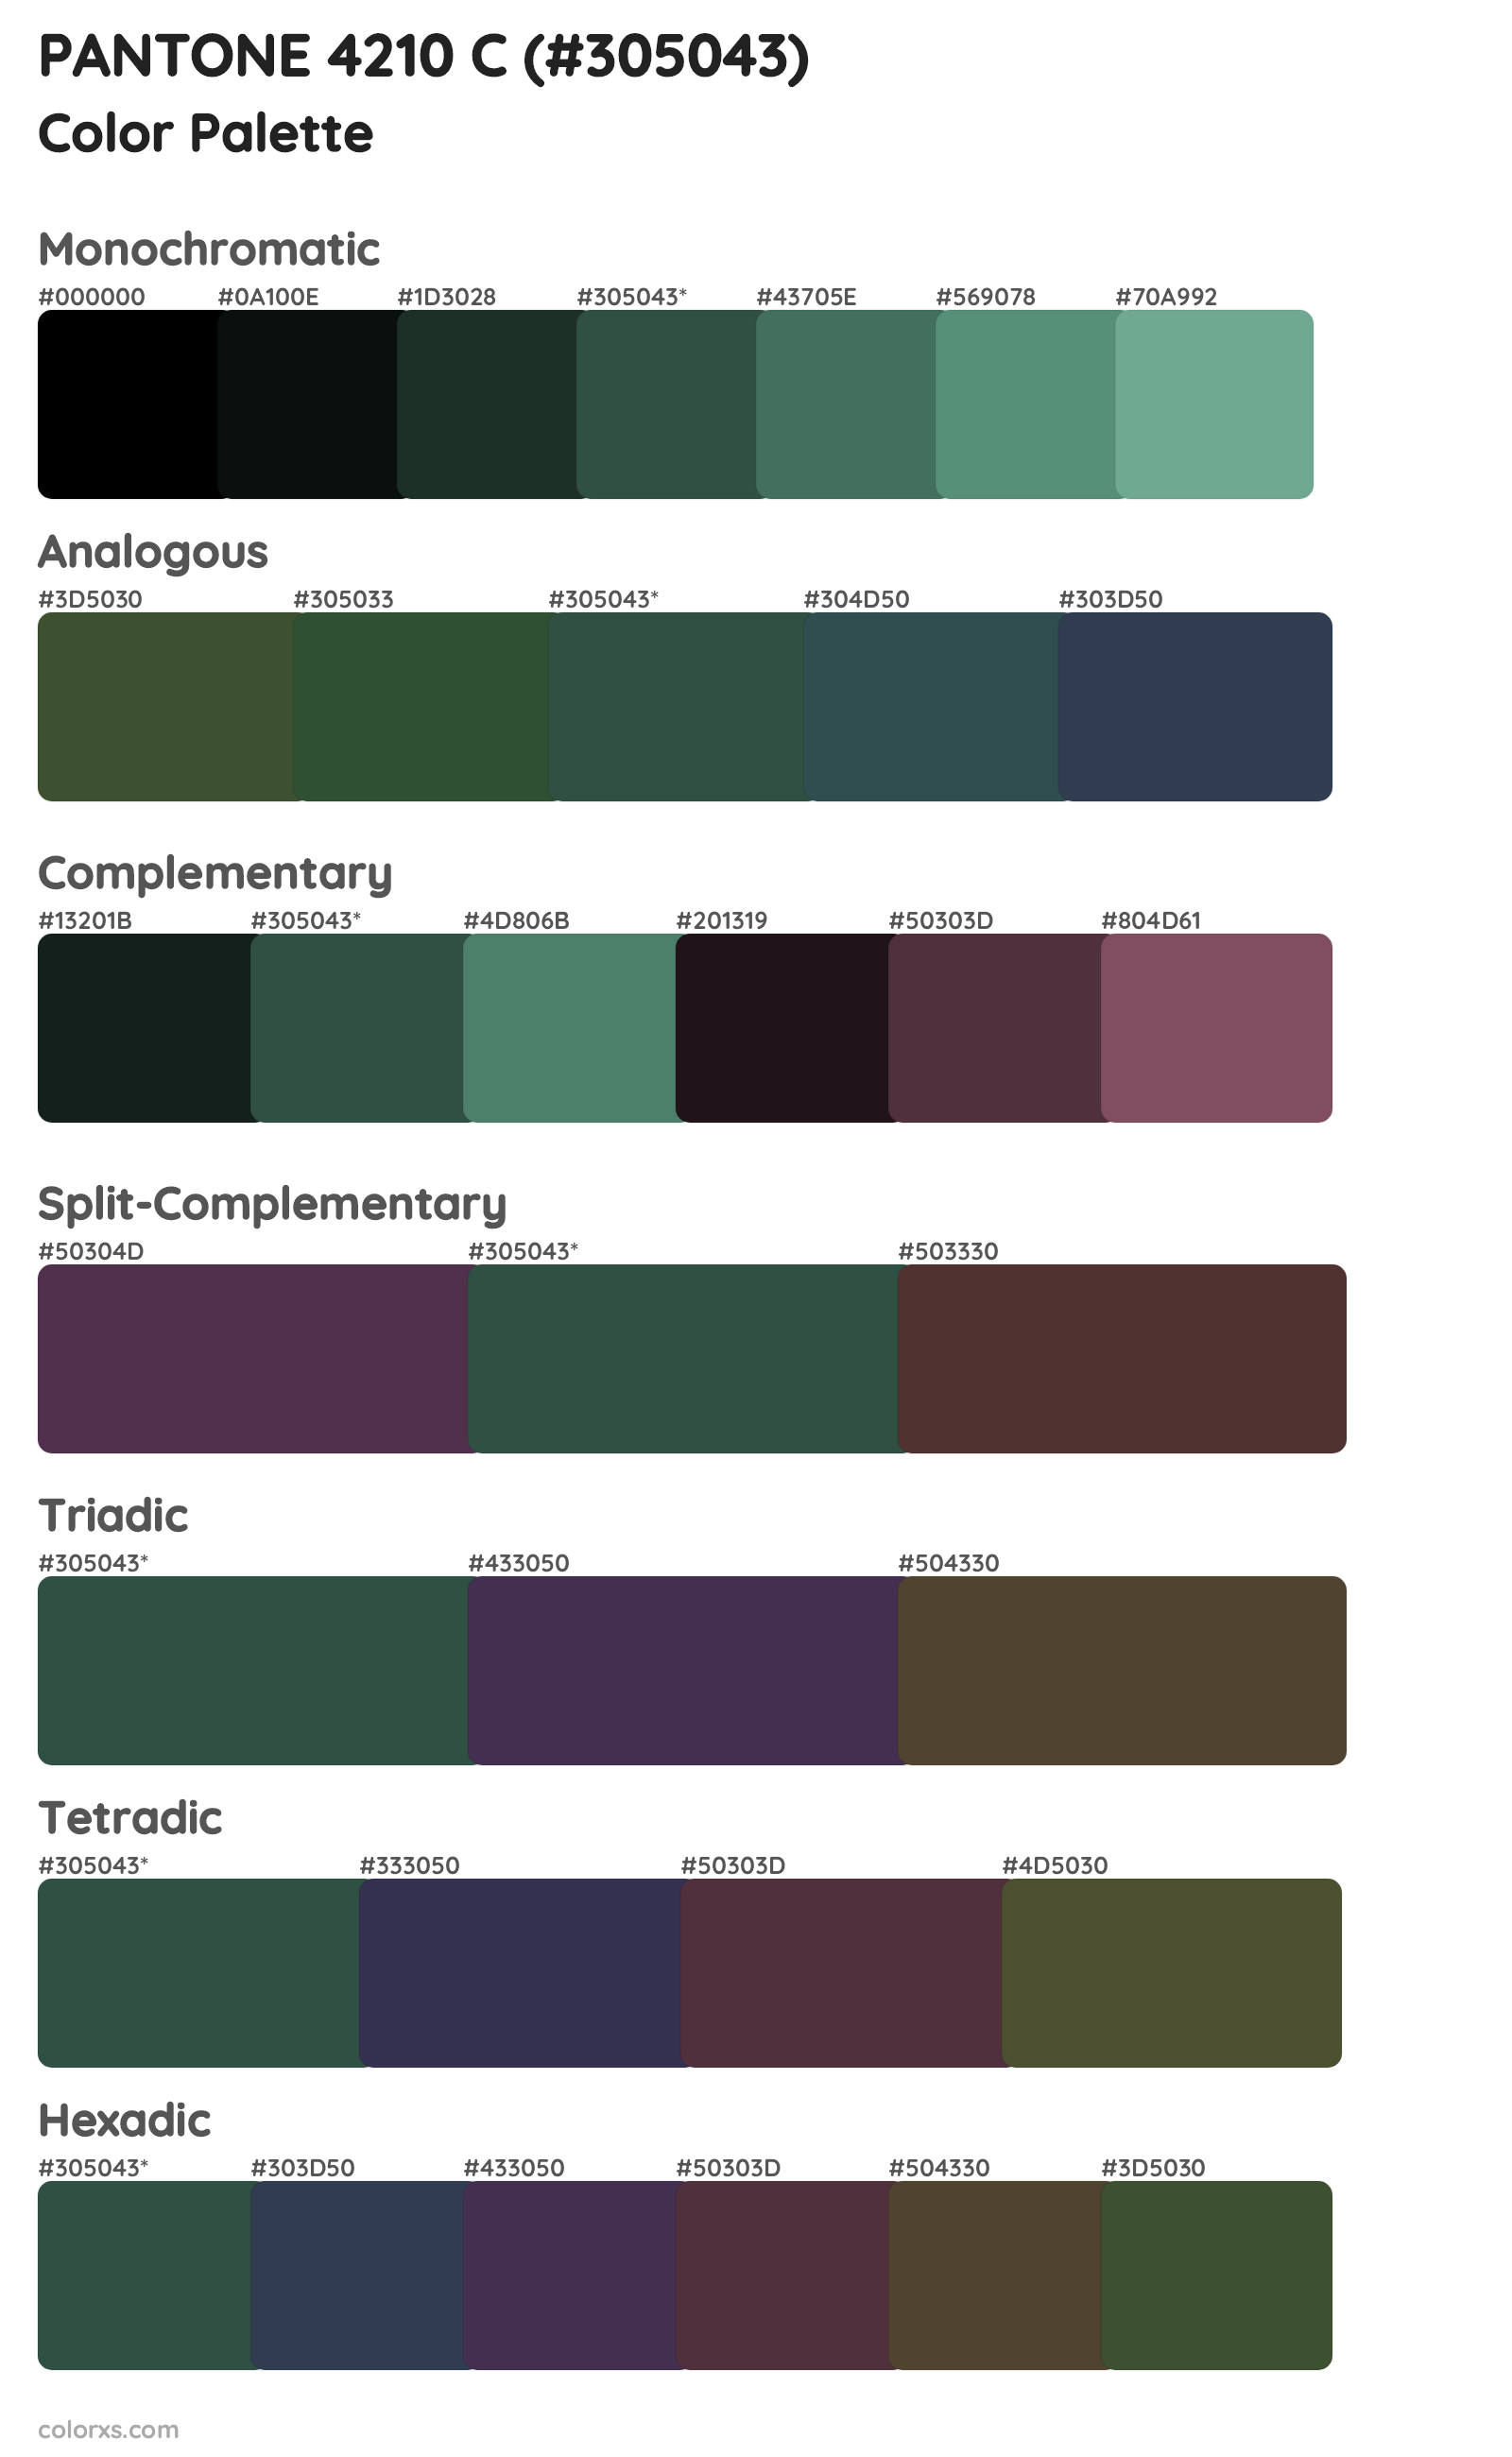 PANTONE 4210 C Color Scheme Palettes